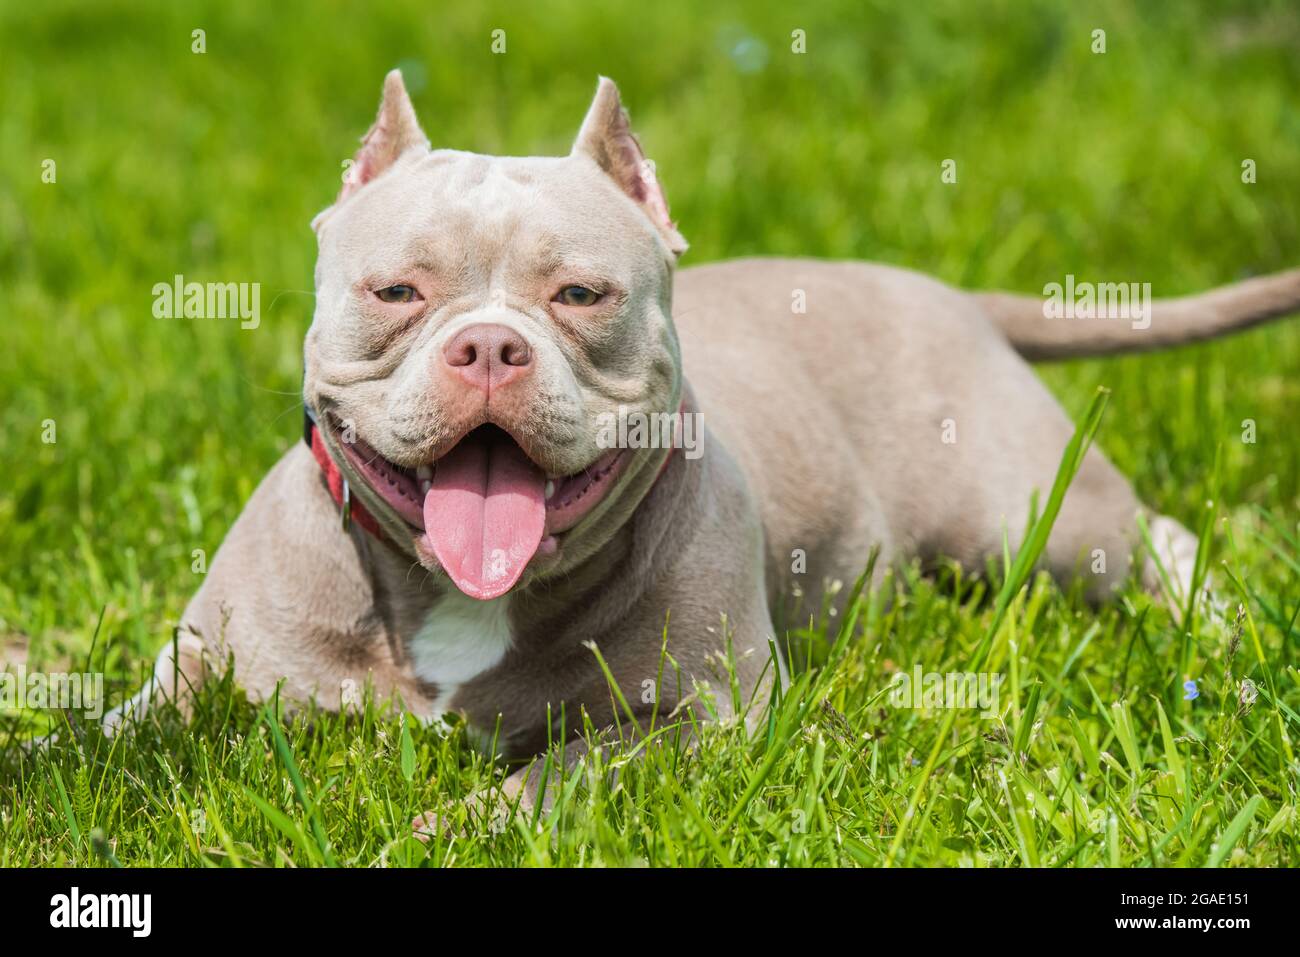 Ein amerikanischer Bully-Hund in der Farbe Lilac liegt auf grünem Gras.  Mittelgroßer Hund mit einem kompakten sperrigen muskulösen Körper,  blockigem Kopf und schweren Knochenstrukturen Stockfotografie - Alamy